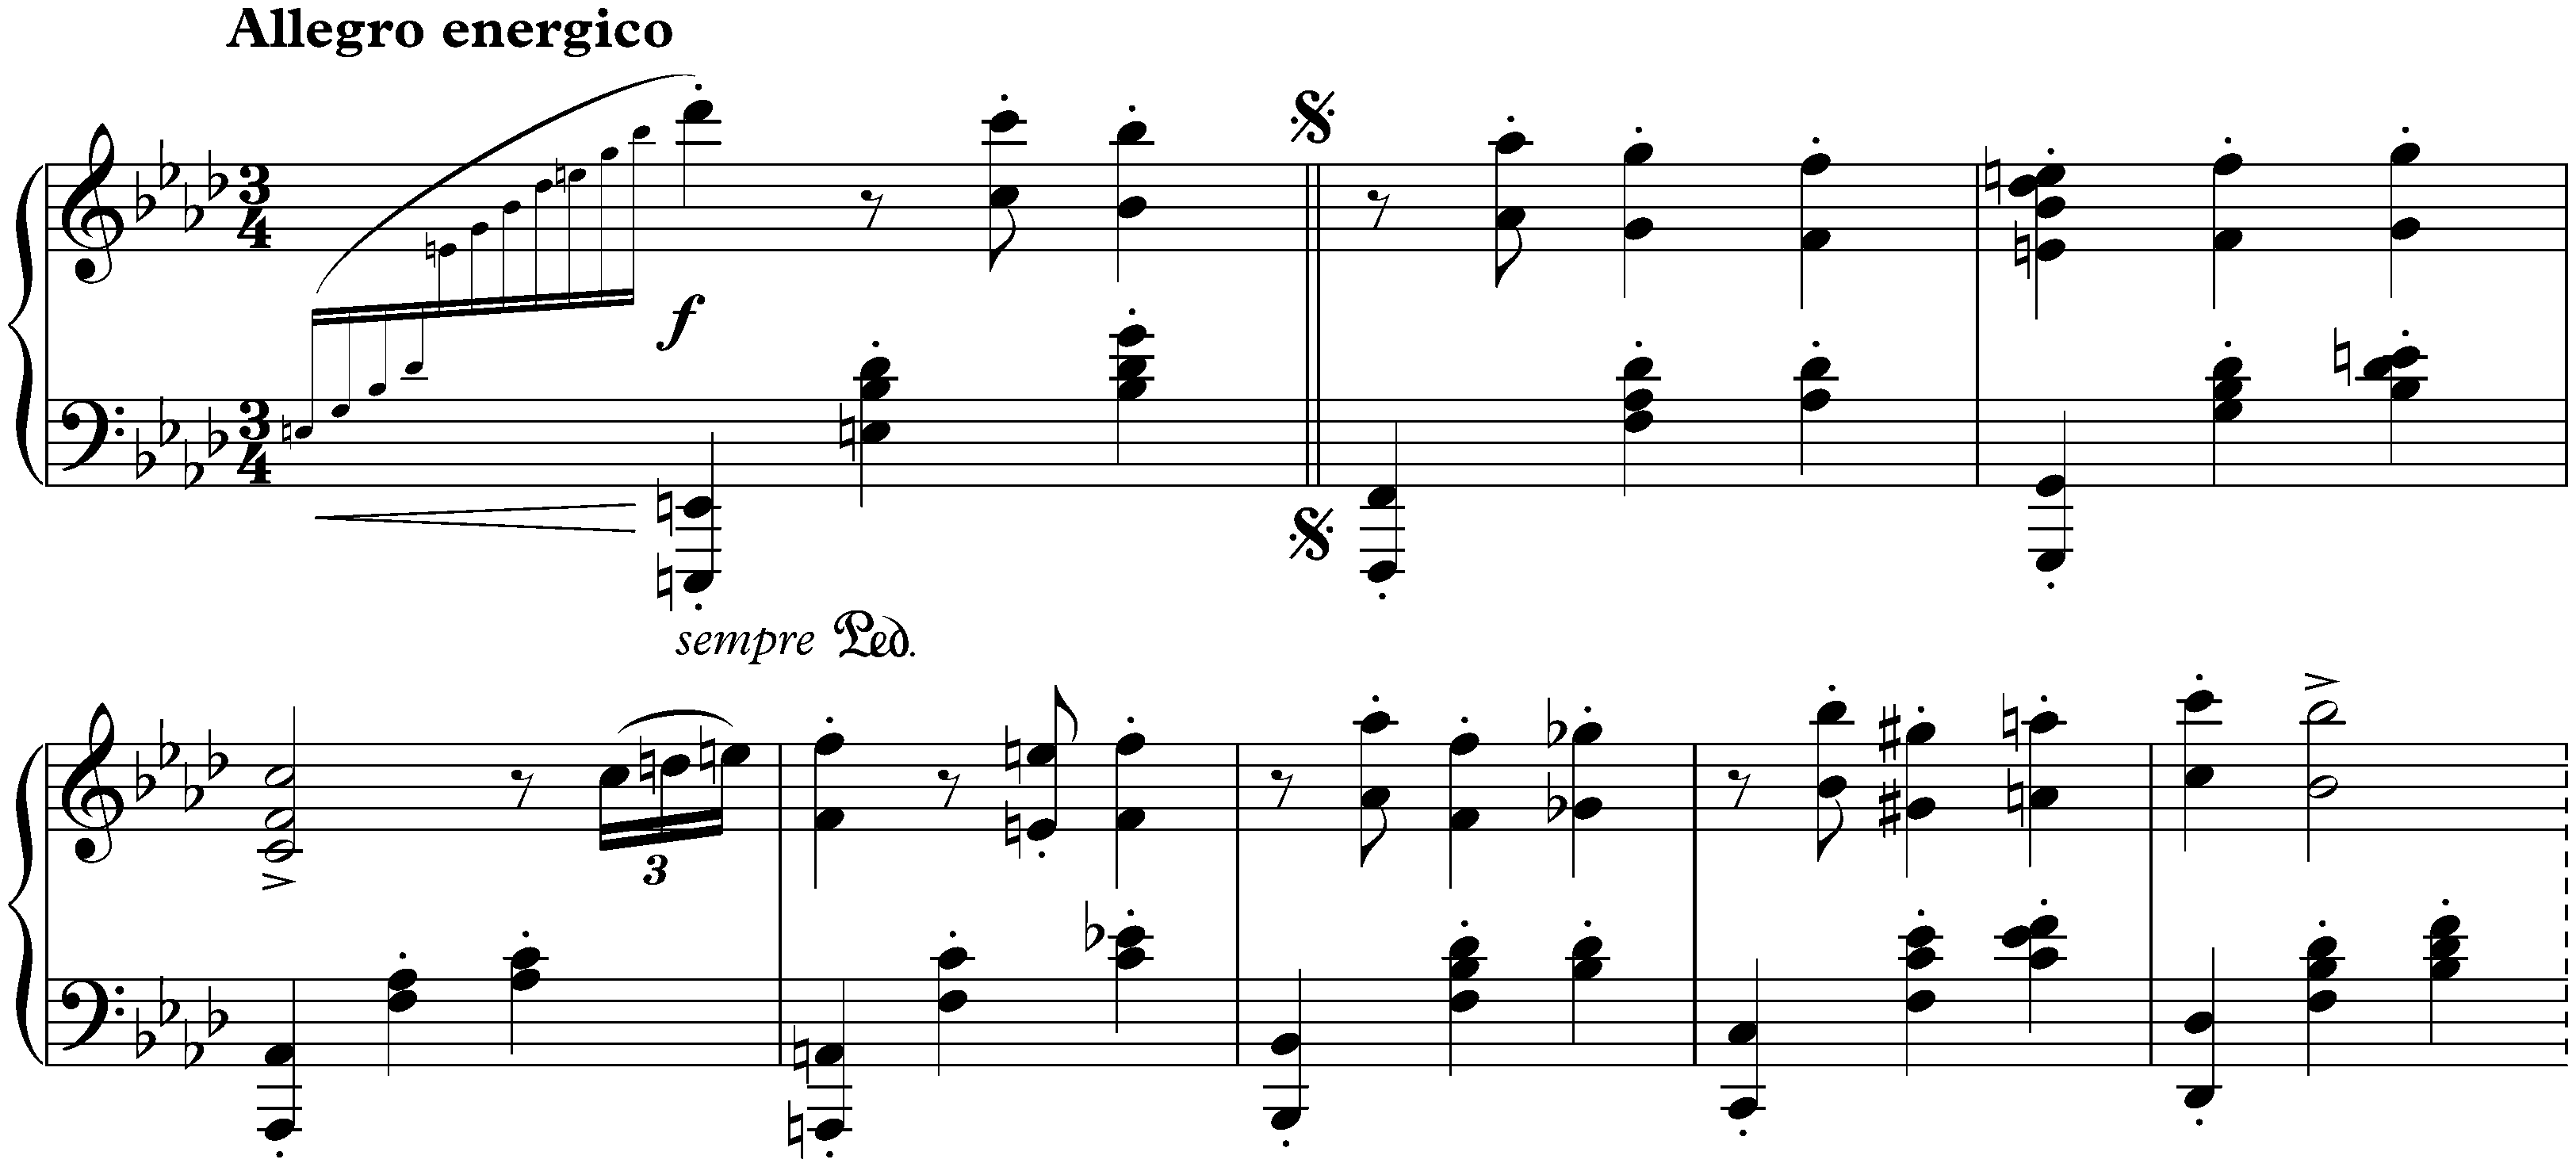 Sonata no. 3 in F minor, op. 5; 3. Scherzo: Allegro energico